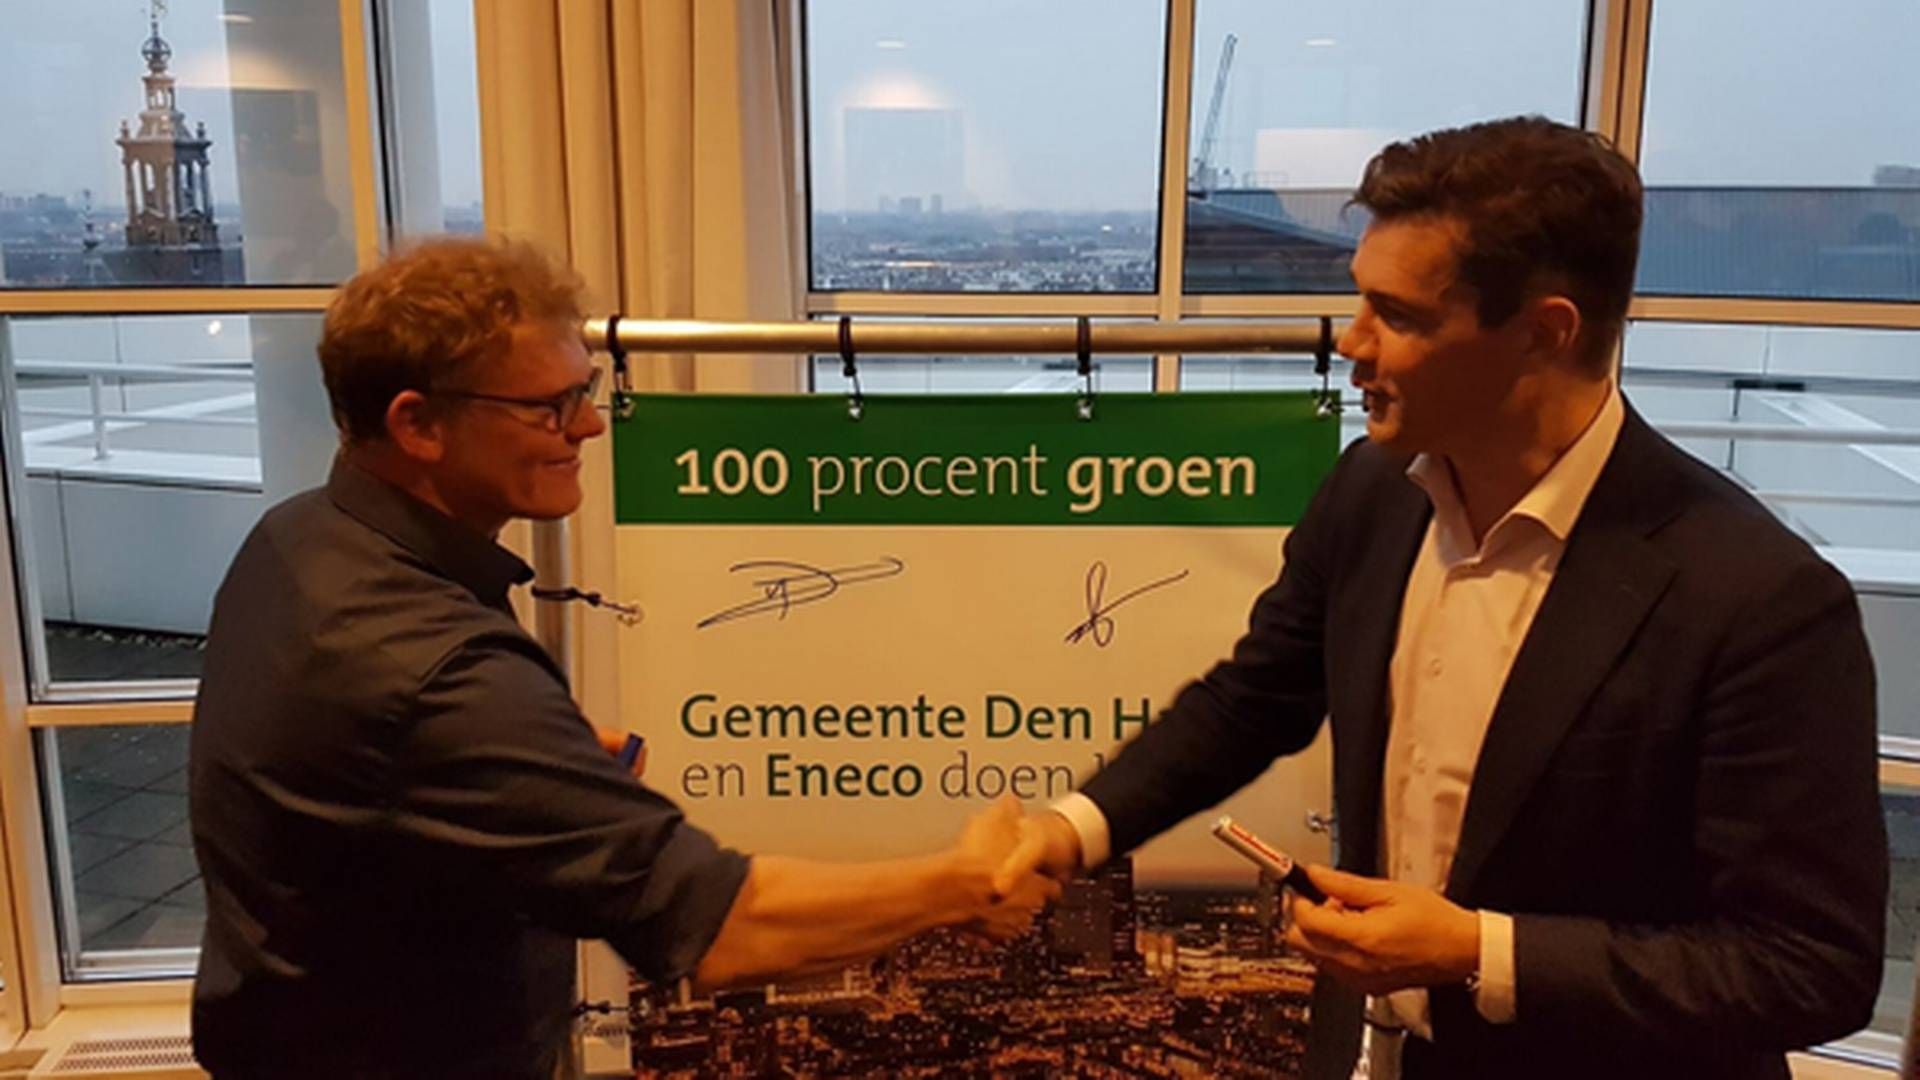 Det hollandske energiselskab Eneco underskrev i sidste uge en aftale med myndighederne i Haag om at forsyne kommunens institutioner med udelukkende grøn strøm fra næste år. Kritikere frygter dog, at Eneco kan miste sin grønne profil ved et salg.